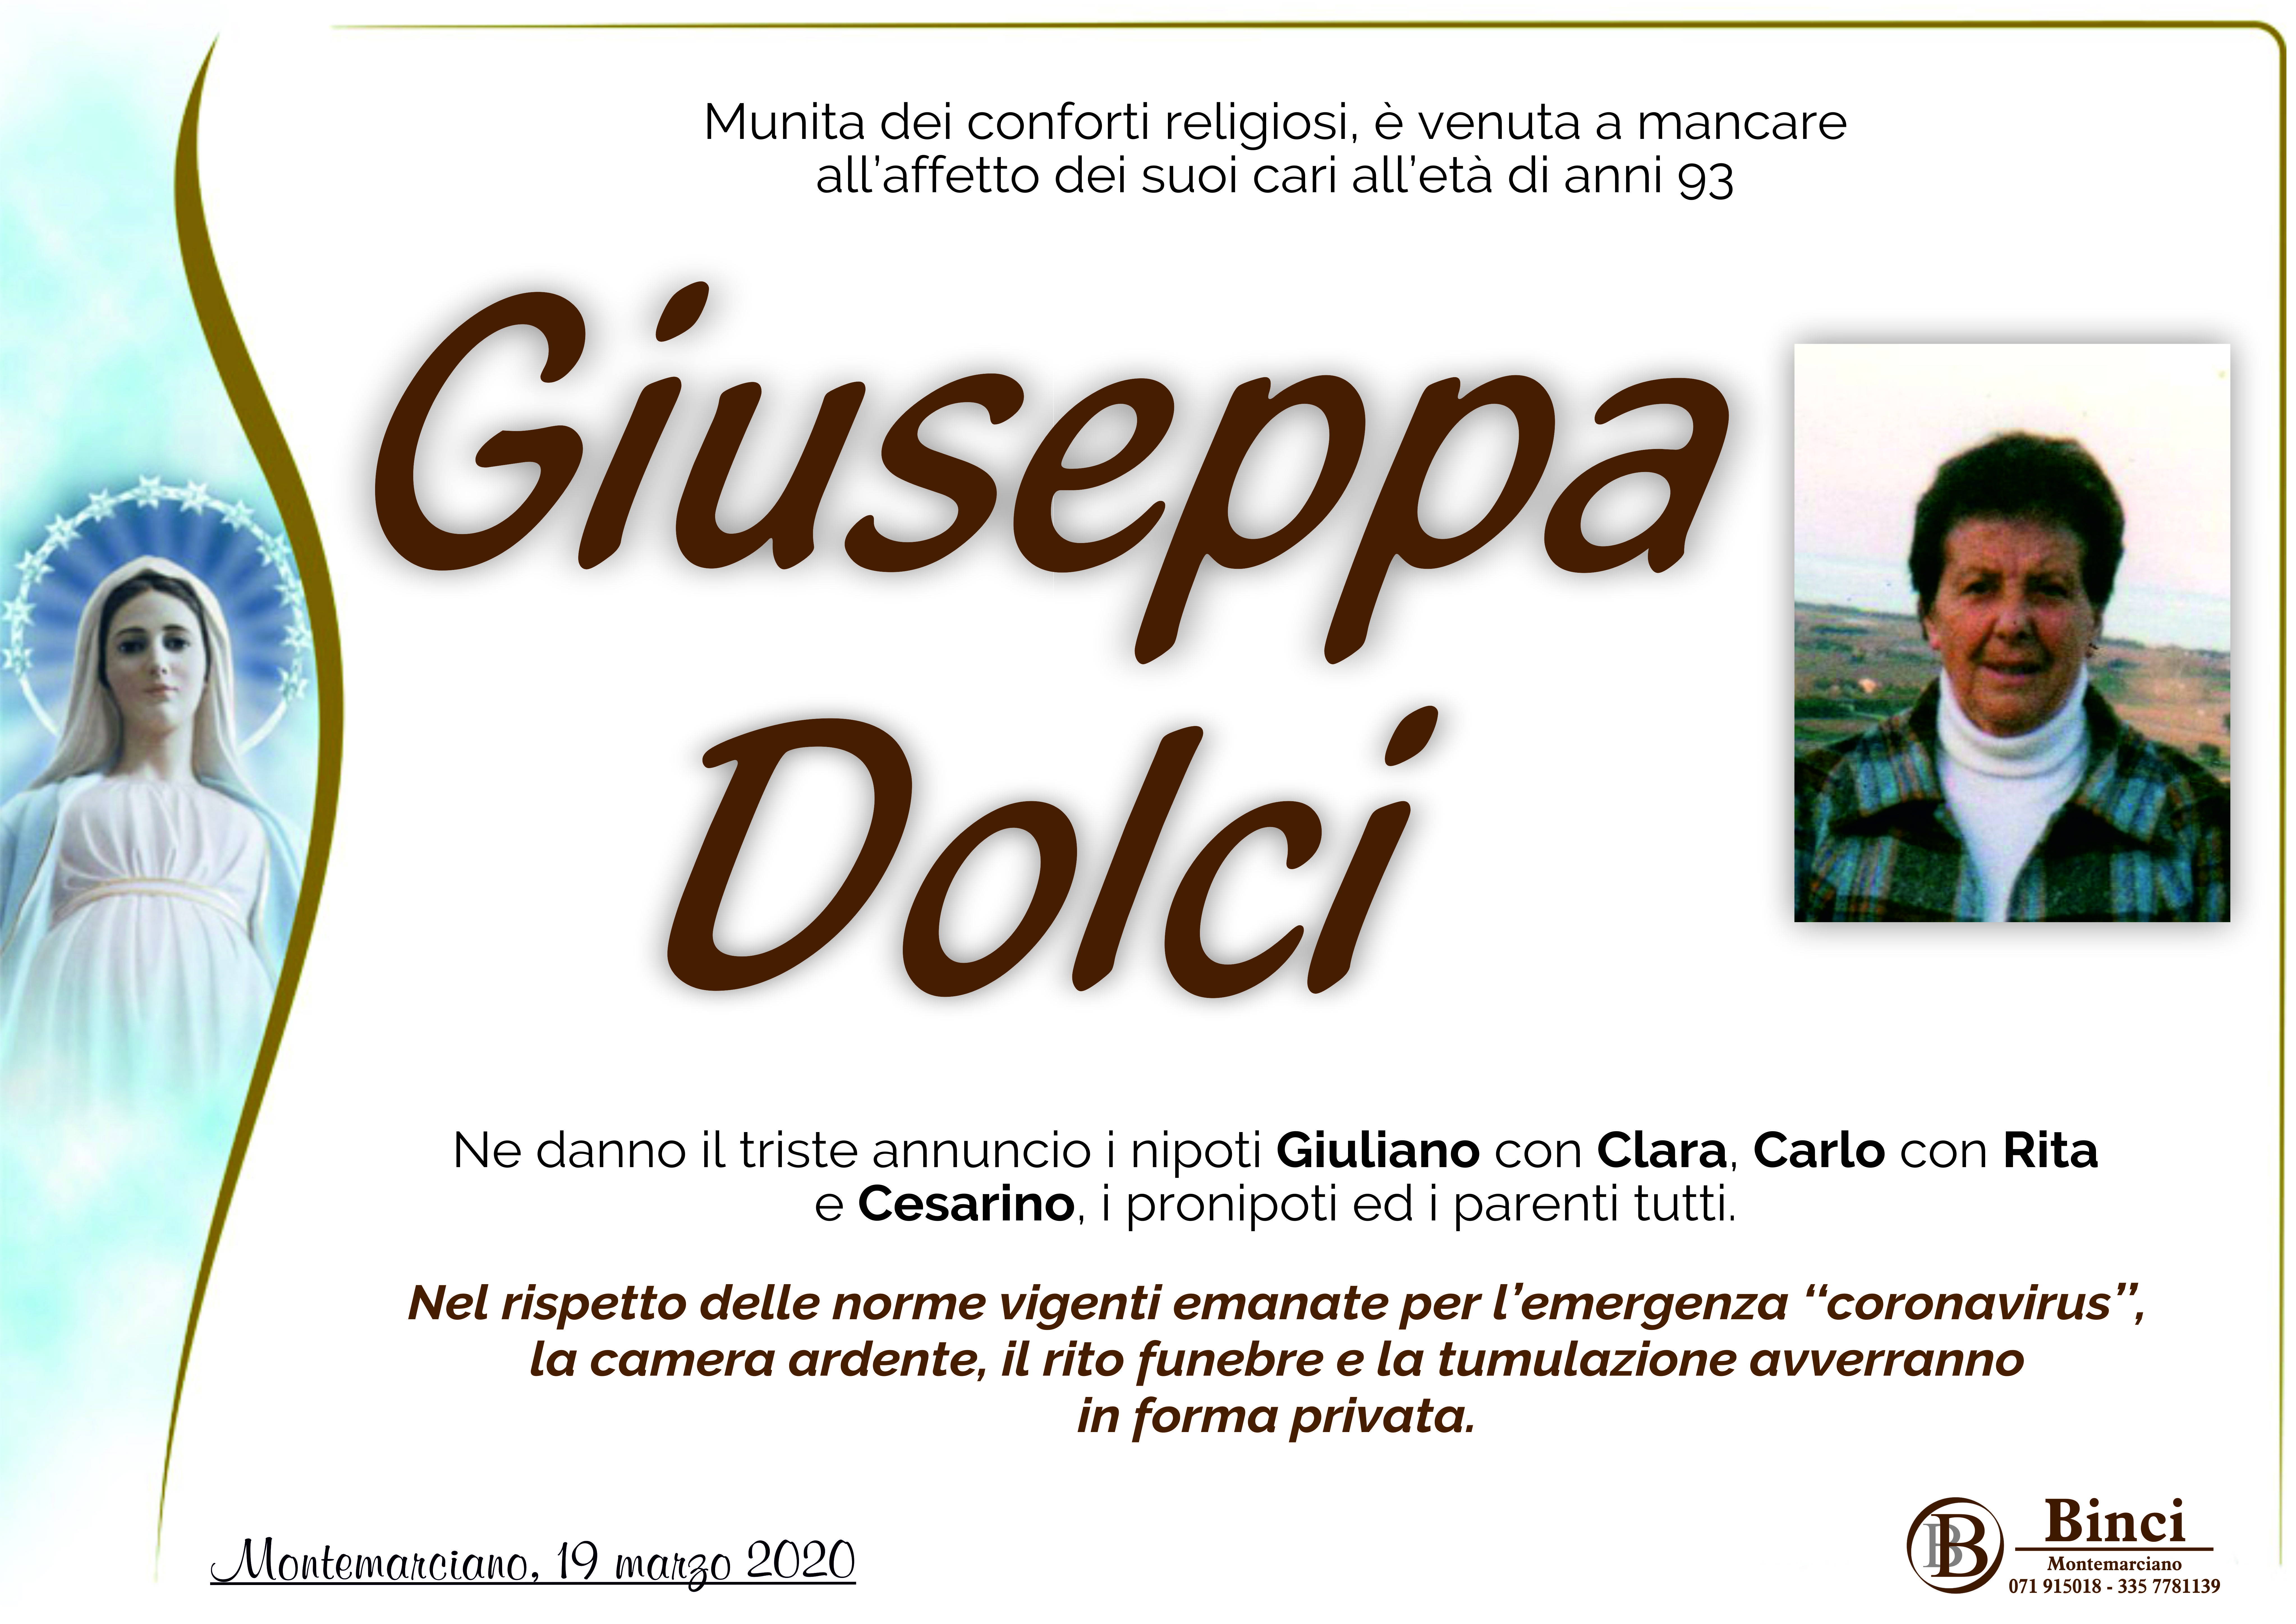 Giuseppa Dolci